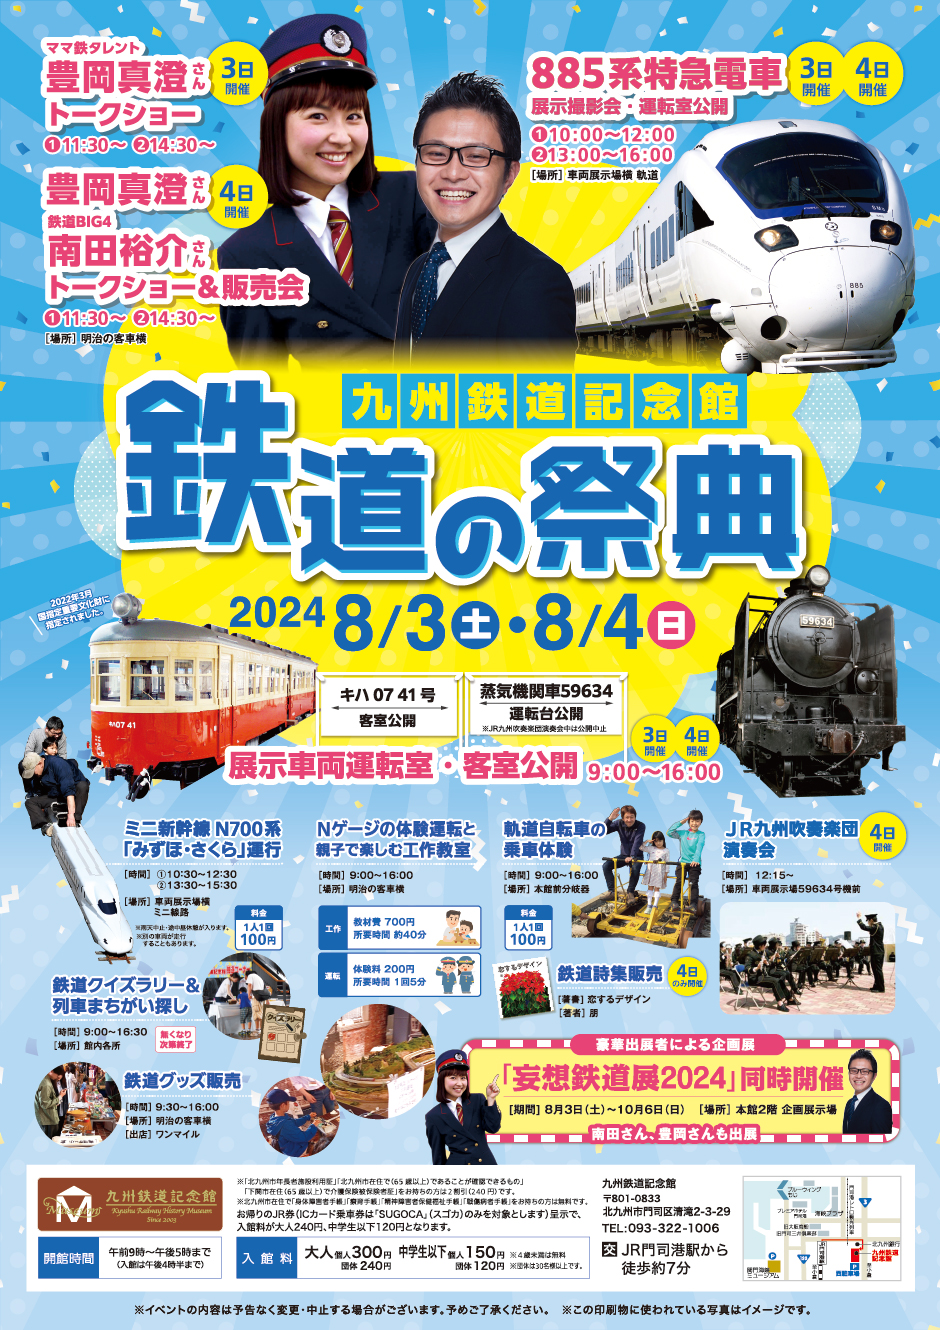 夏イベント「鉄道の祭典」開催について